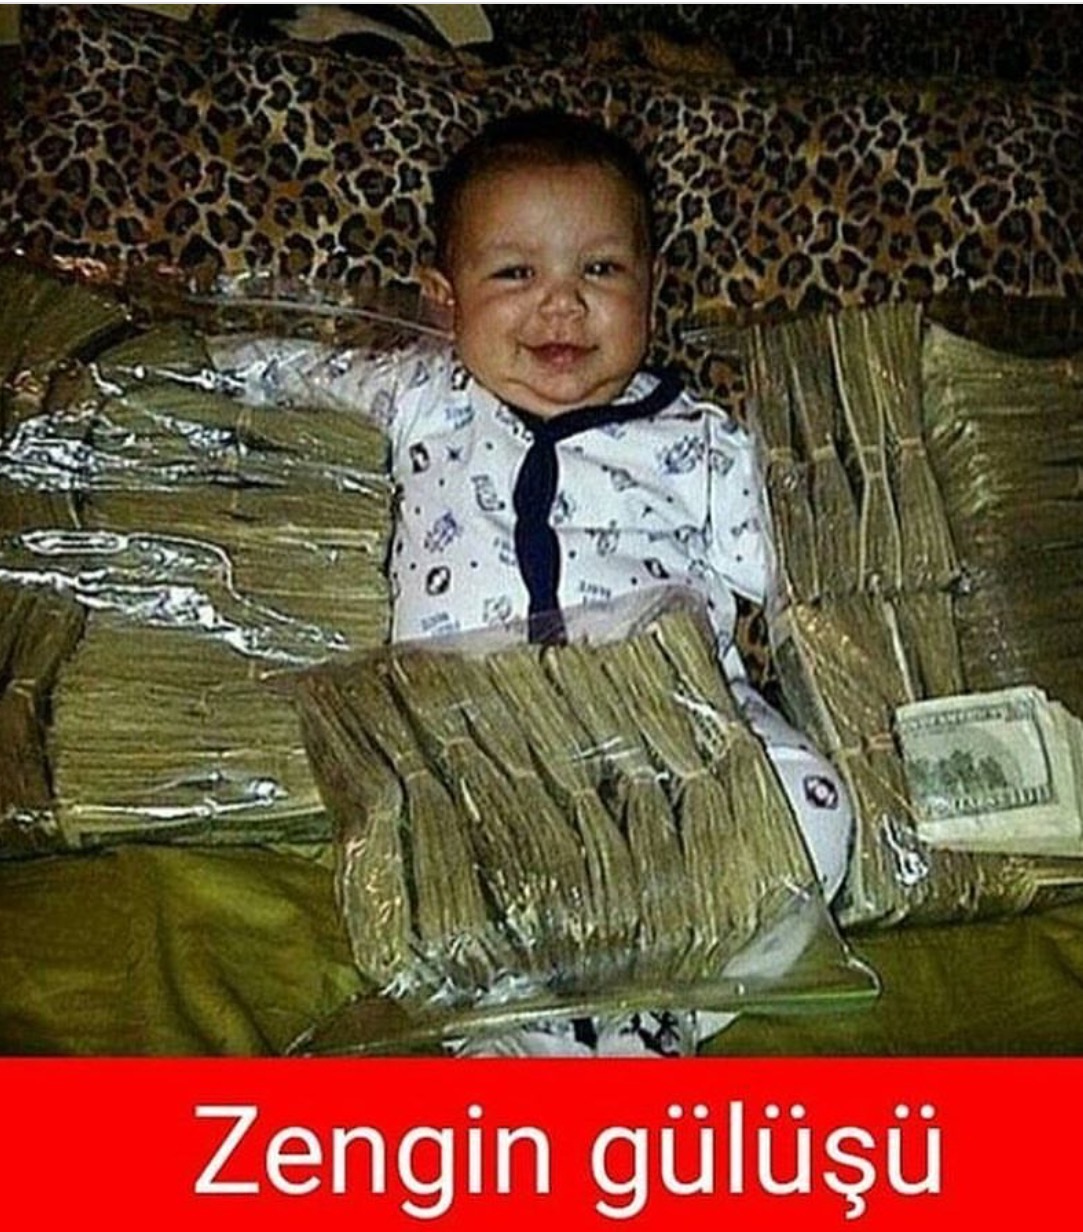 Смешная фотография ребенка с деньгами